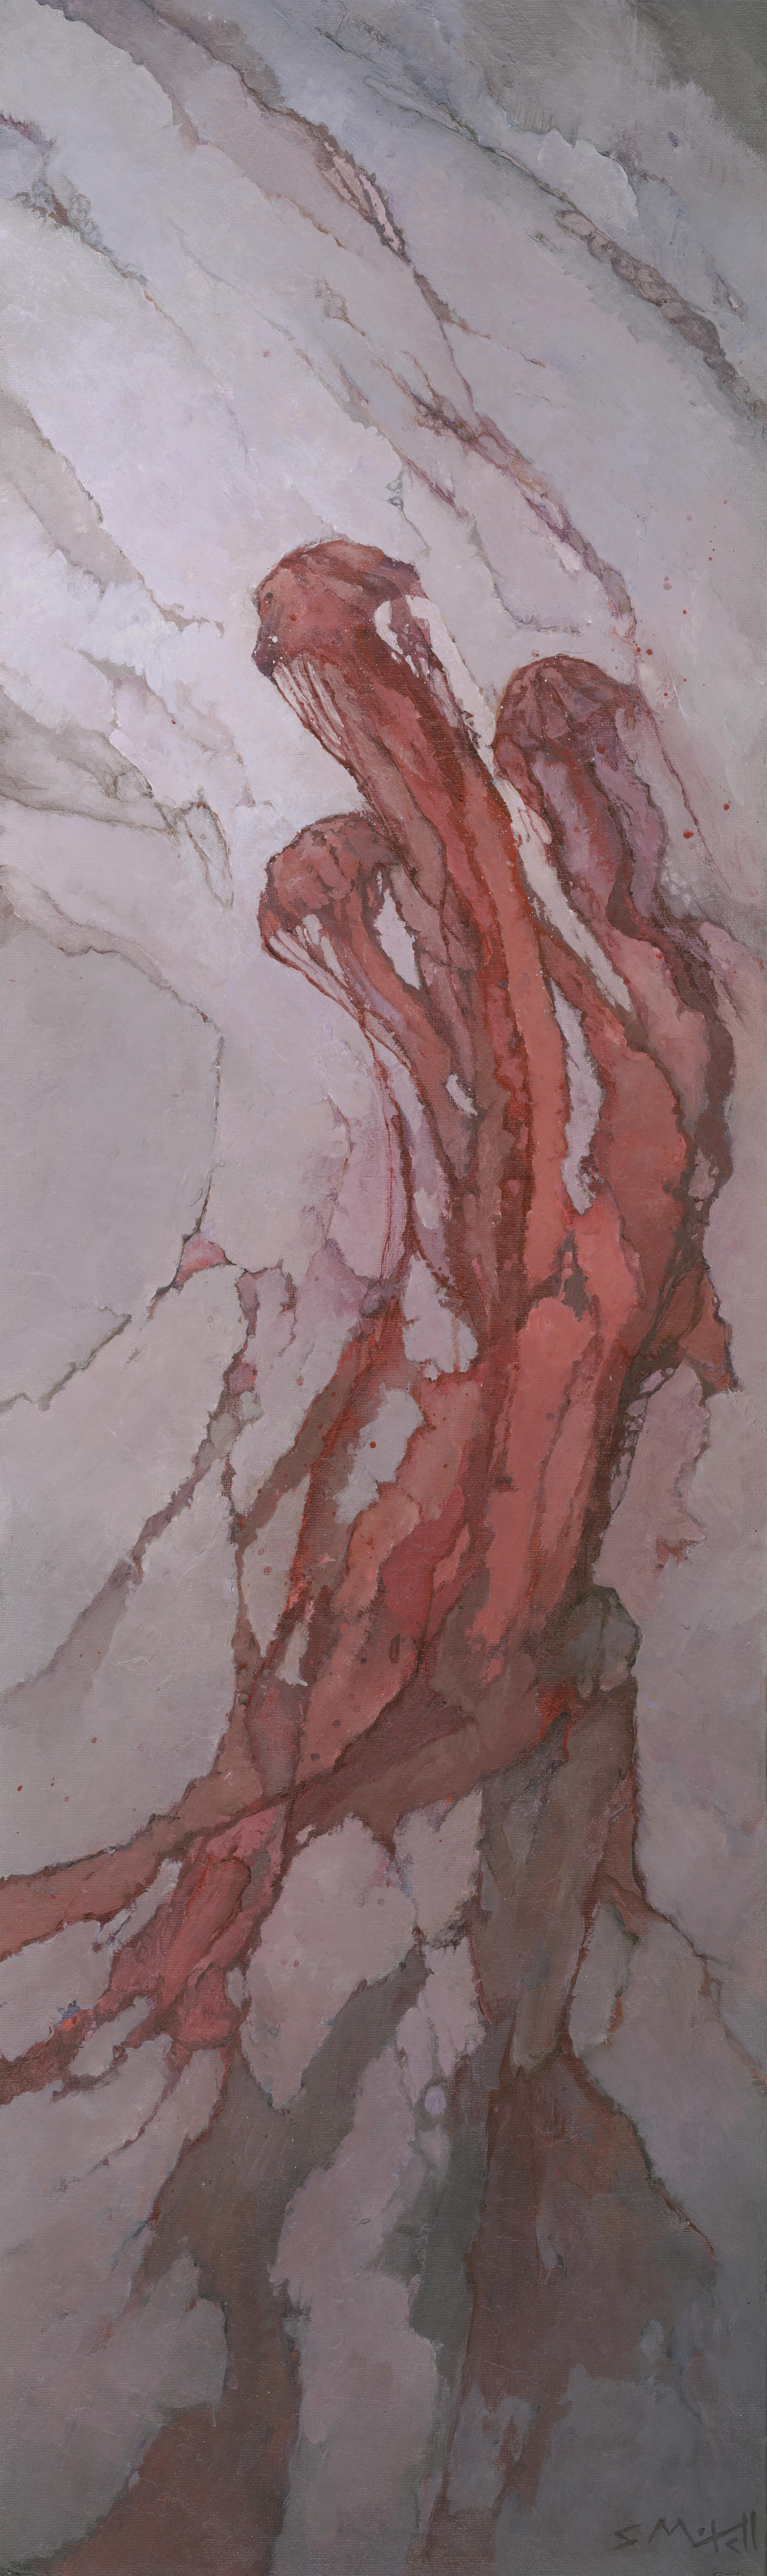 Abstract Painting Stephen Mitchell - Peinture - Rapture de Crimson, peinture, acrylique sur toile